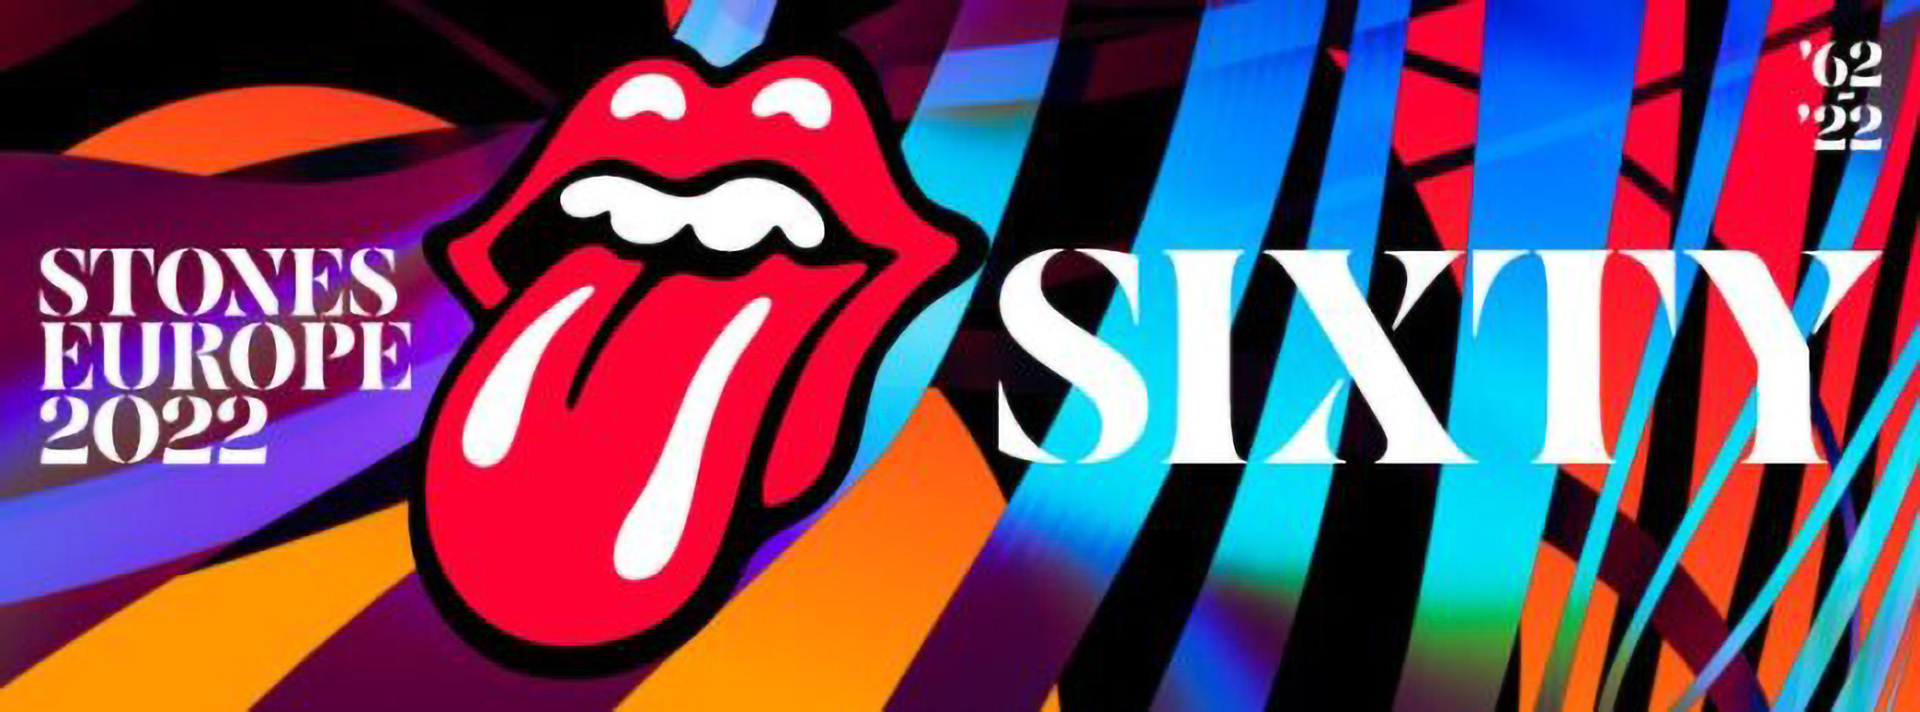 Das legendärste Konzert der Rolling Stones B.E.S.T